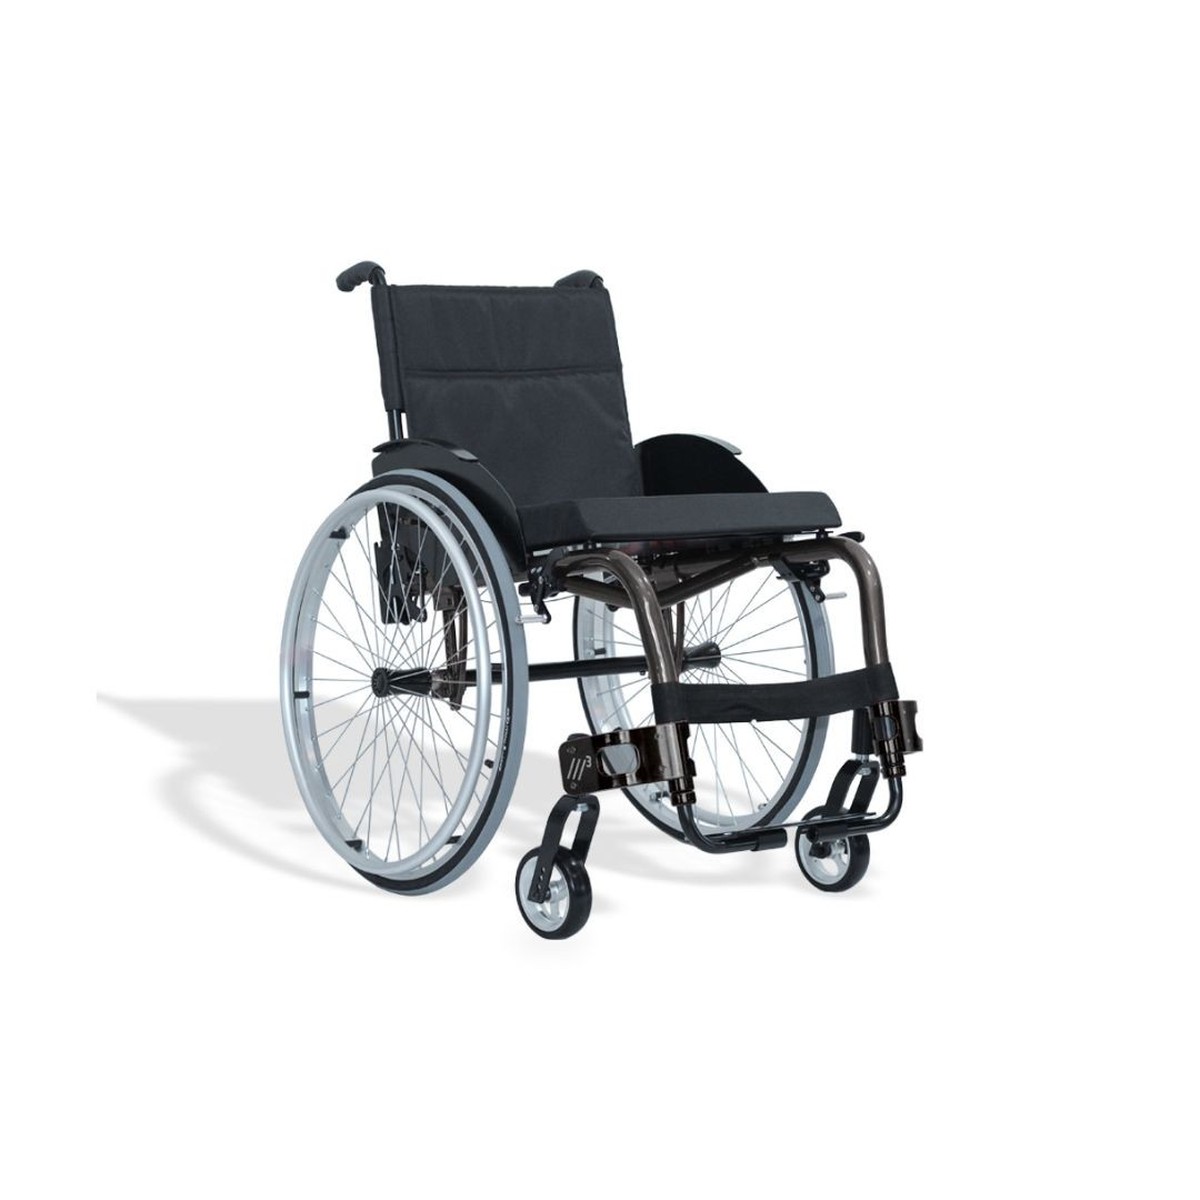 Foto do produto Cadeira de Rodas M3 Padrão